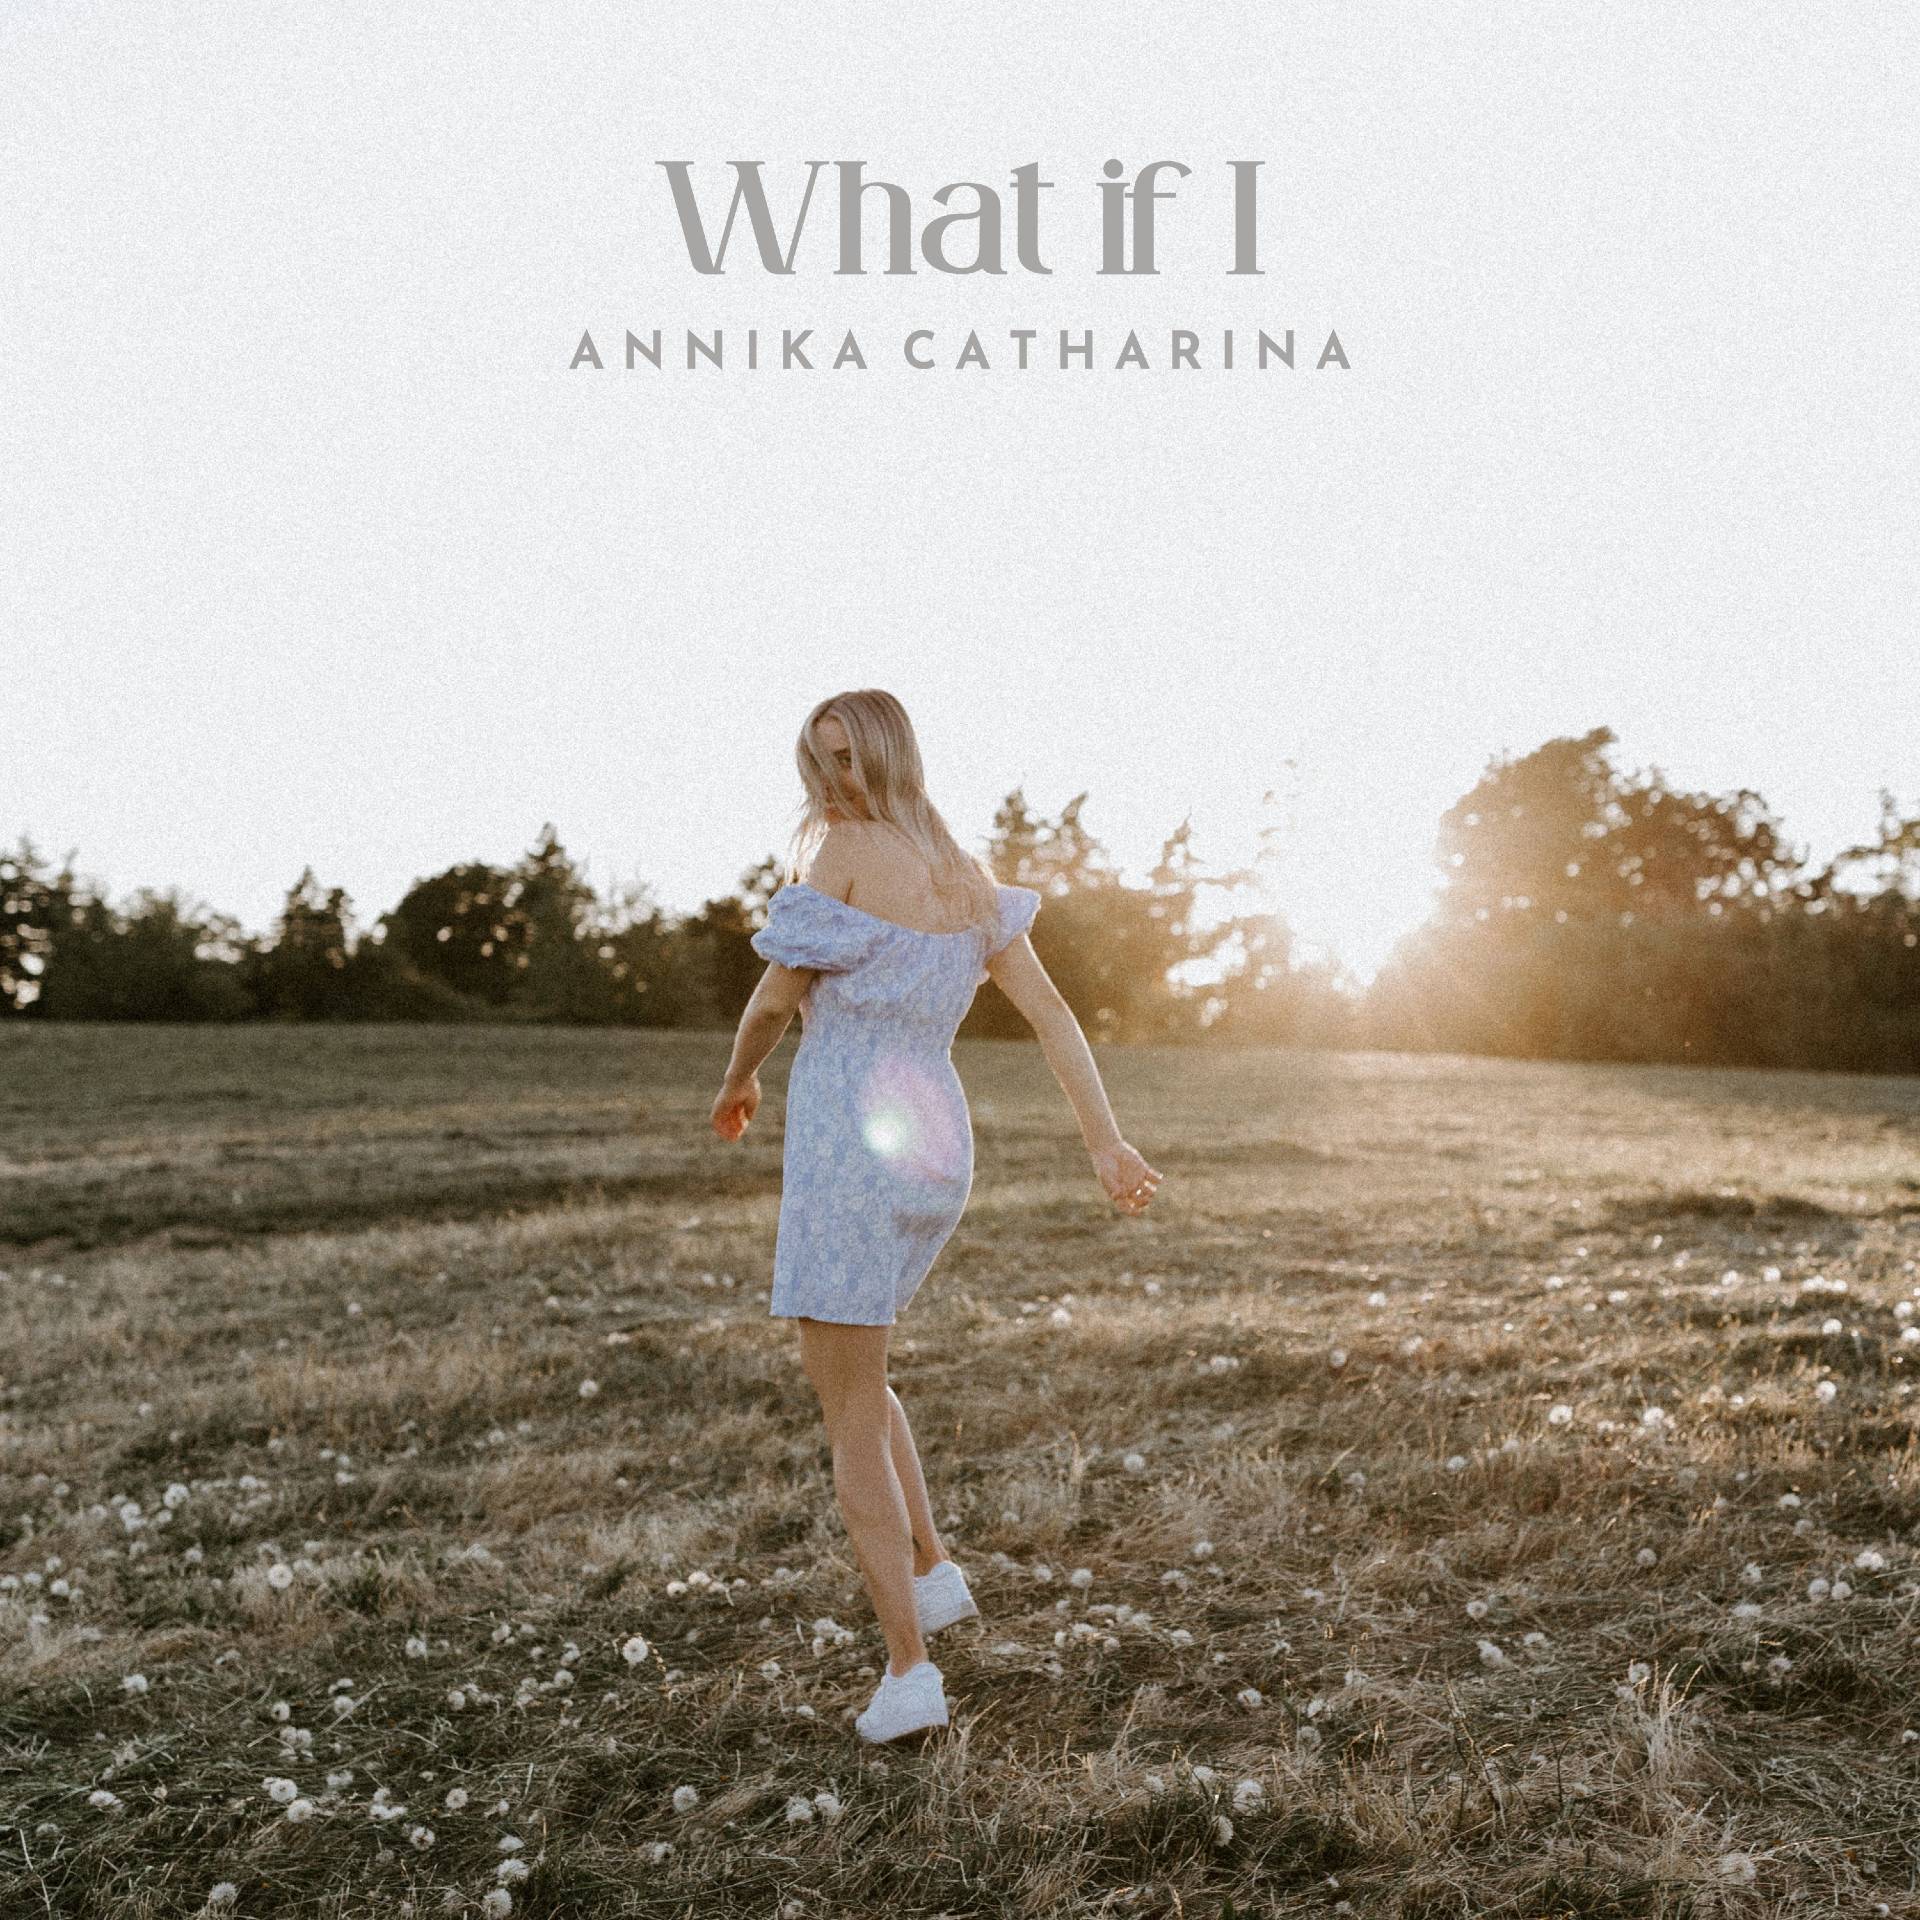 Annika Catharina “What if I” single artwork